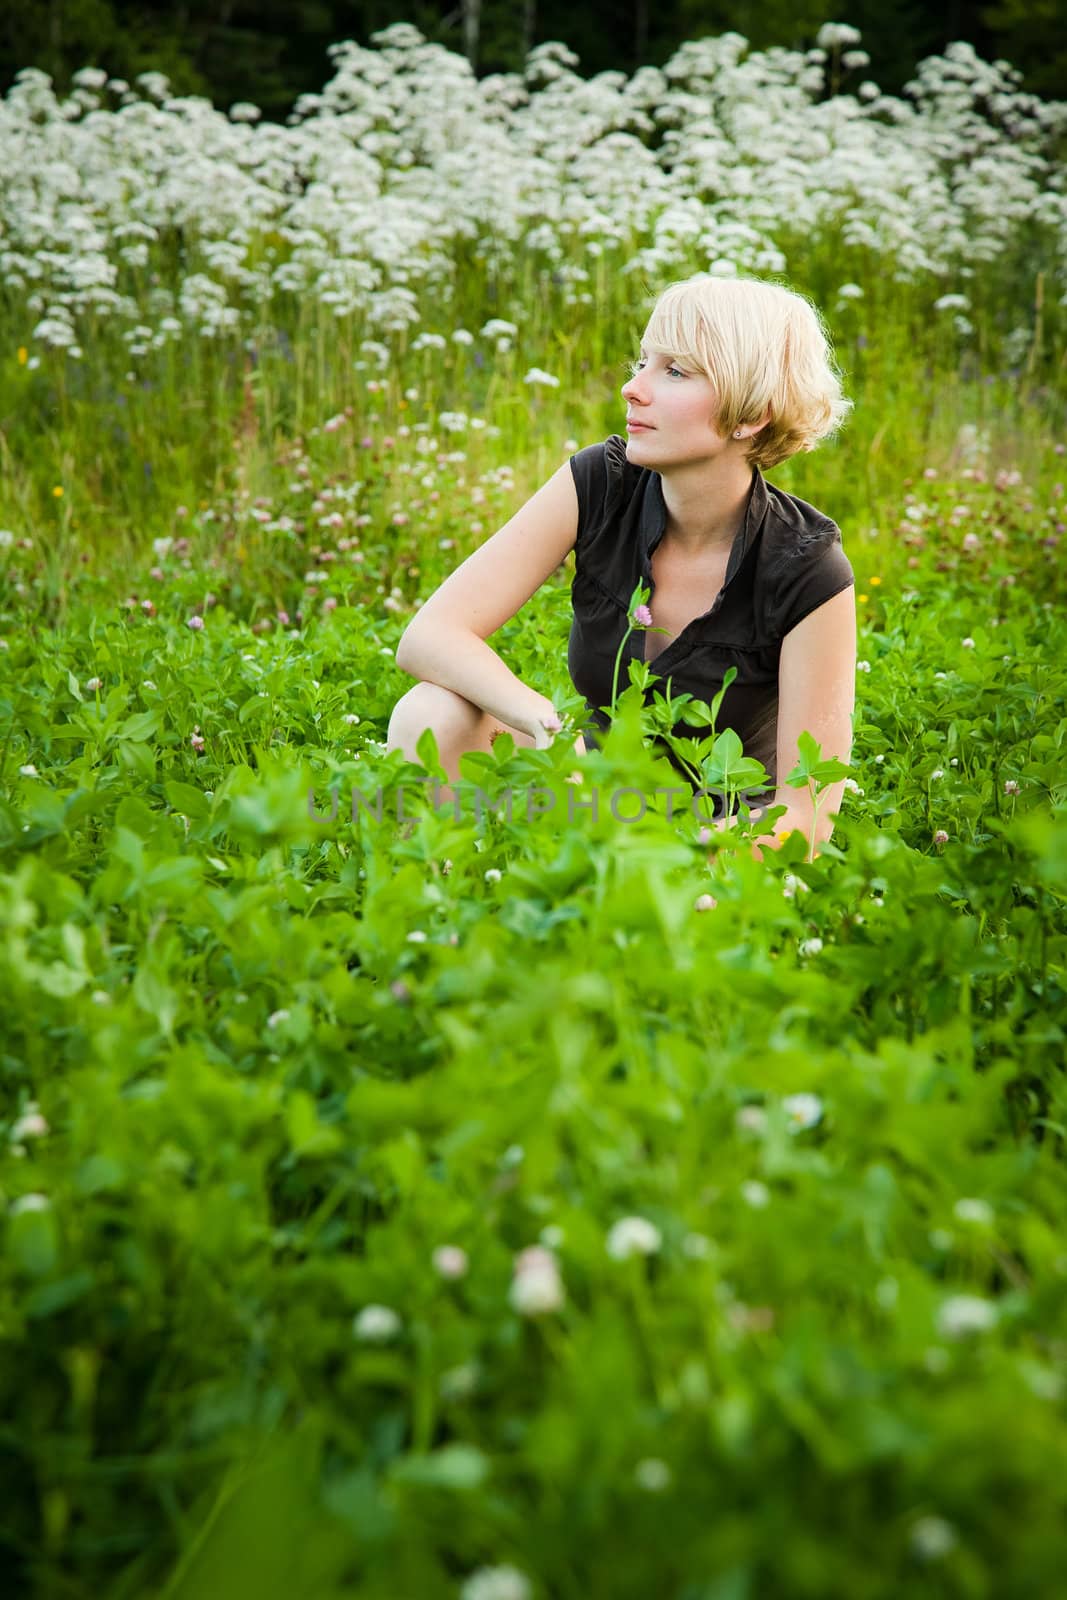 Girl in a field of flowers by aetb